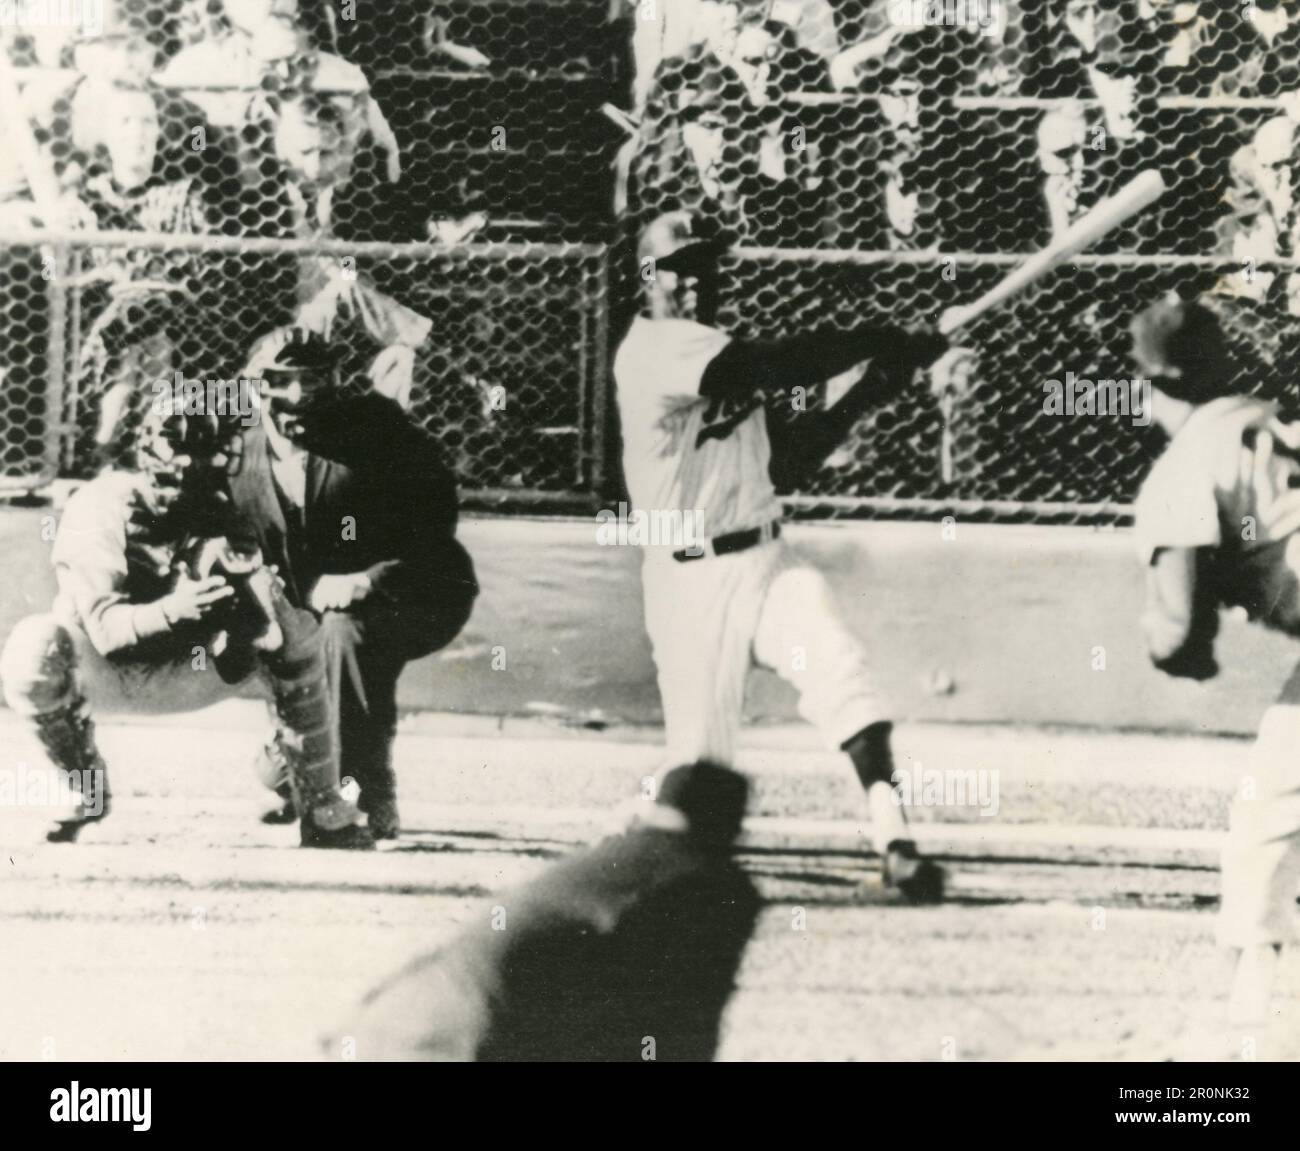 Minnesota Pitcher Jim Grant Blasting una corsa in casa a tre run nella serie mondiale Game, Minneapolis, USA 1965 Foto Stock